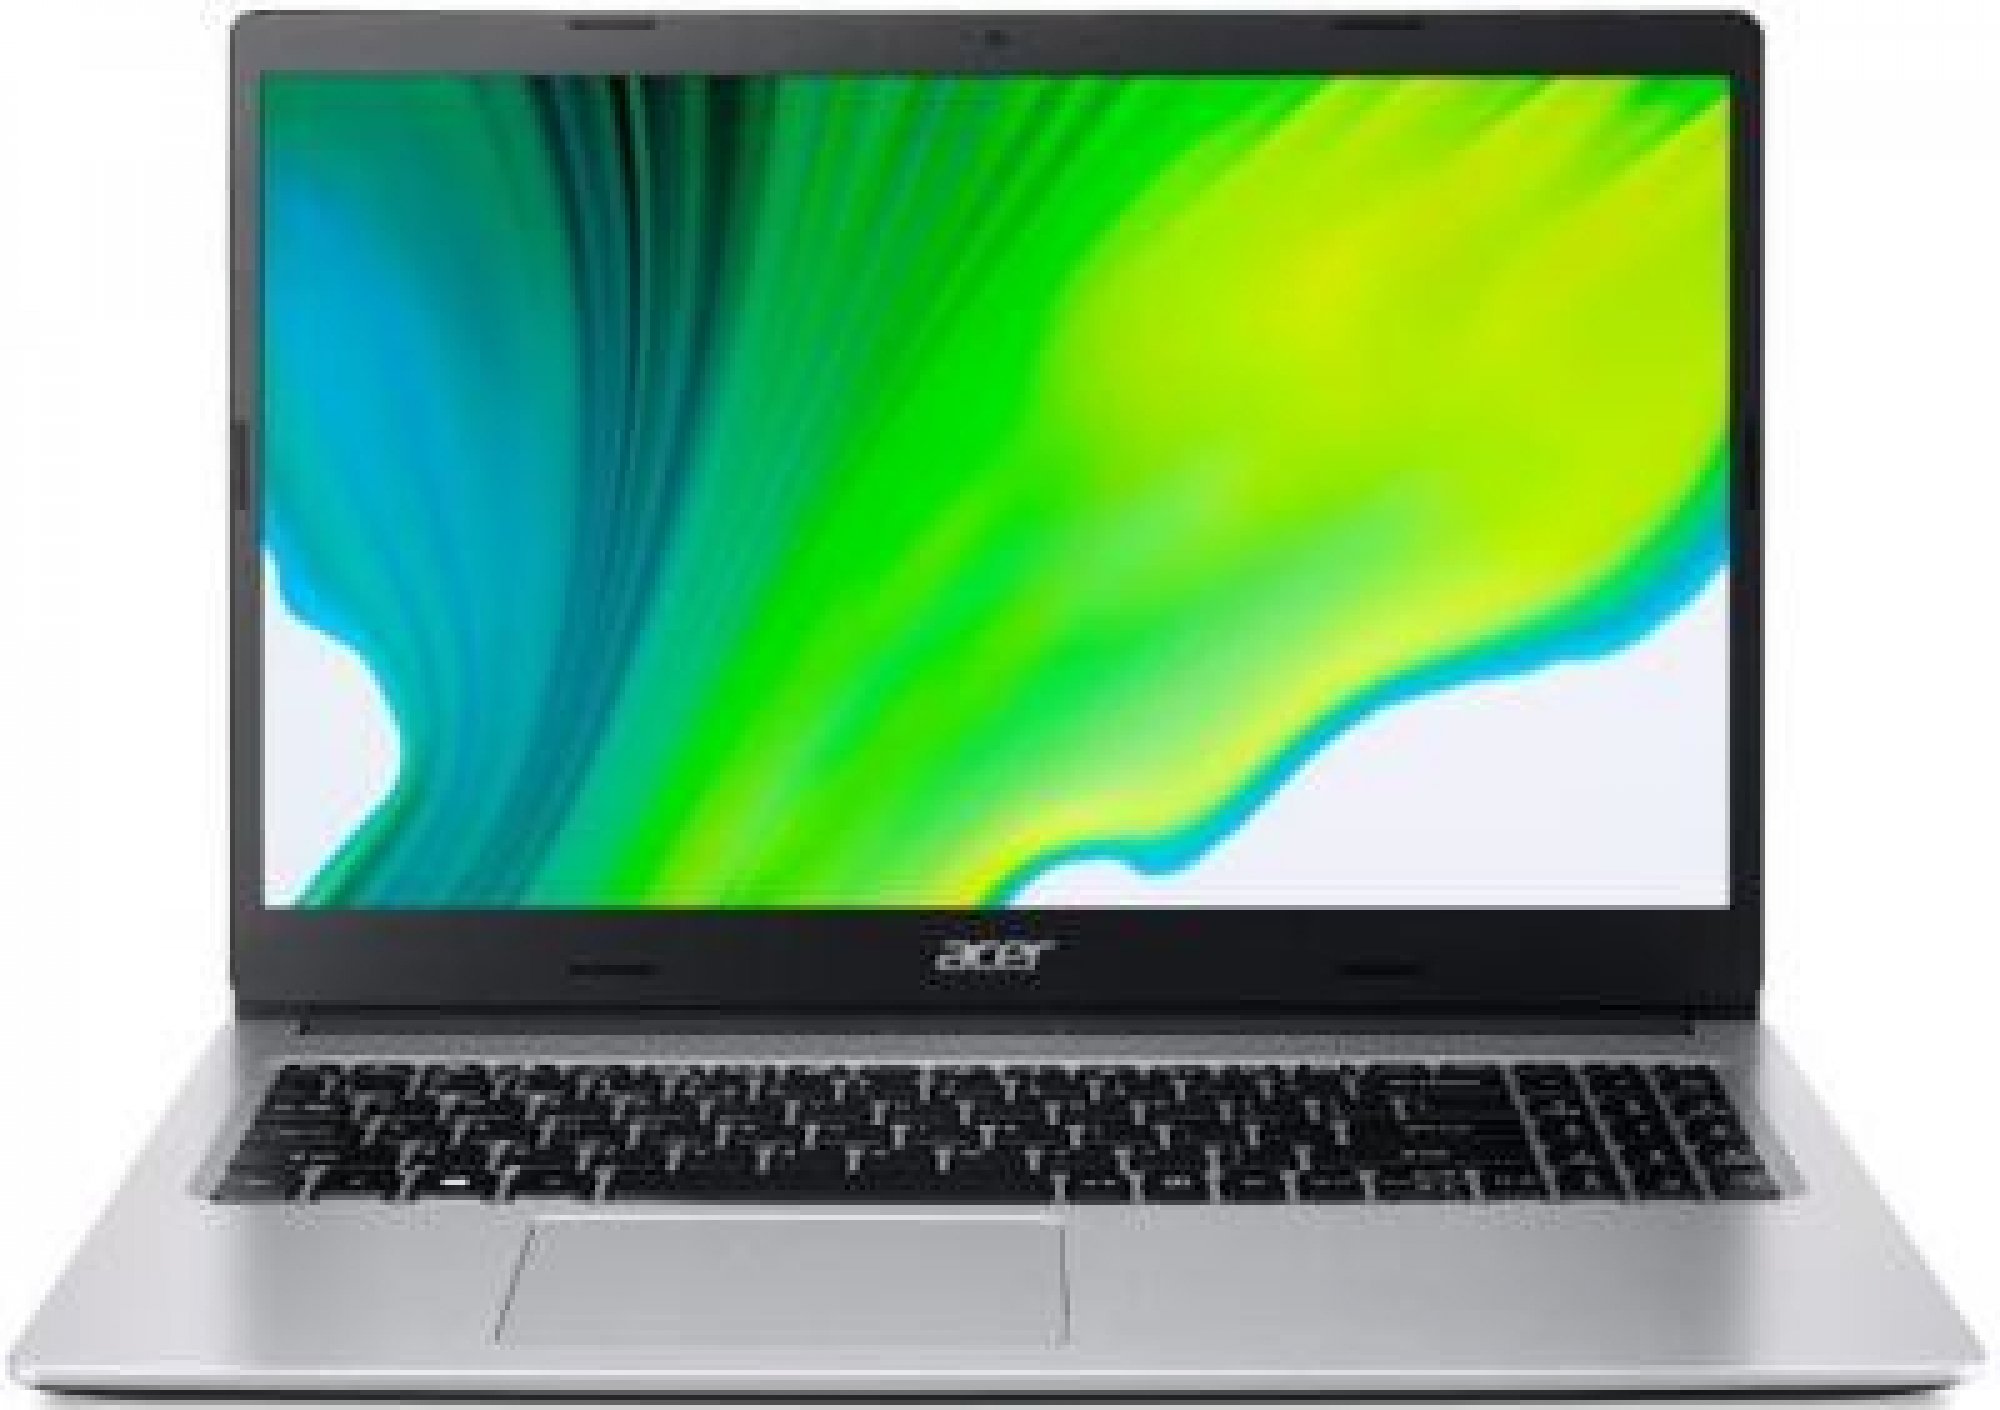 Acer Aspire 3 NX.A2ZEC.003